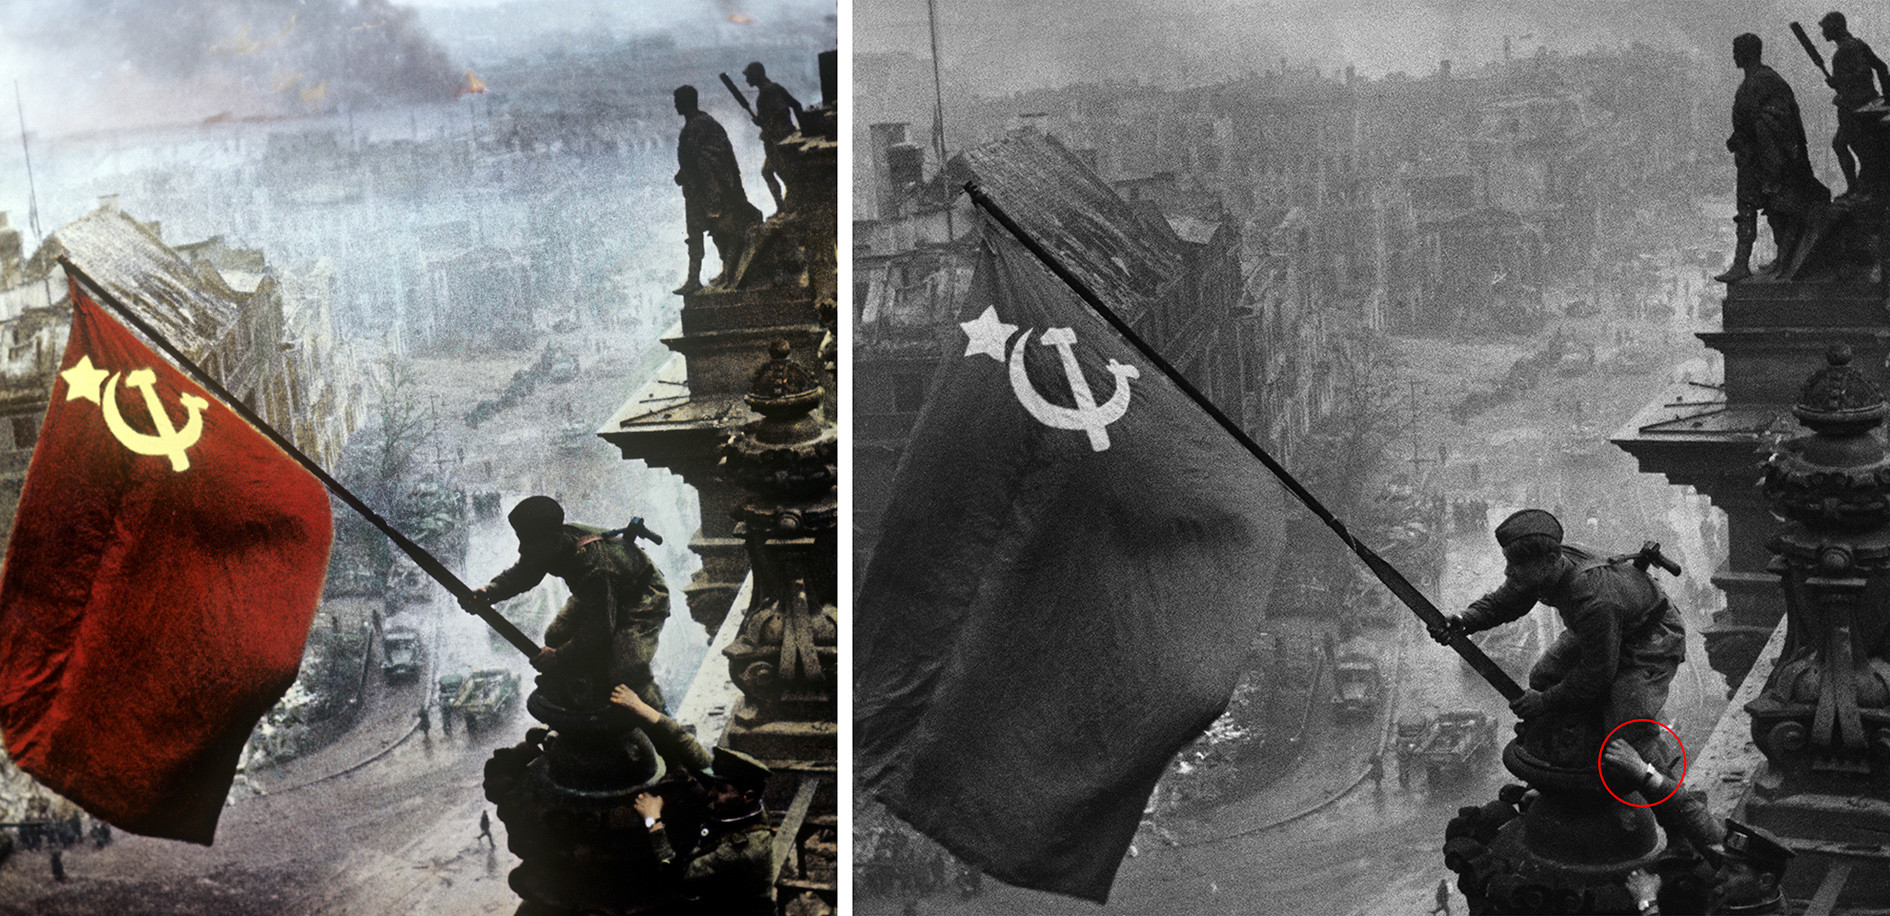 Великая отечественная война в картинках с описанием